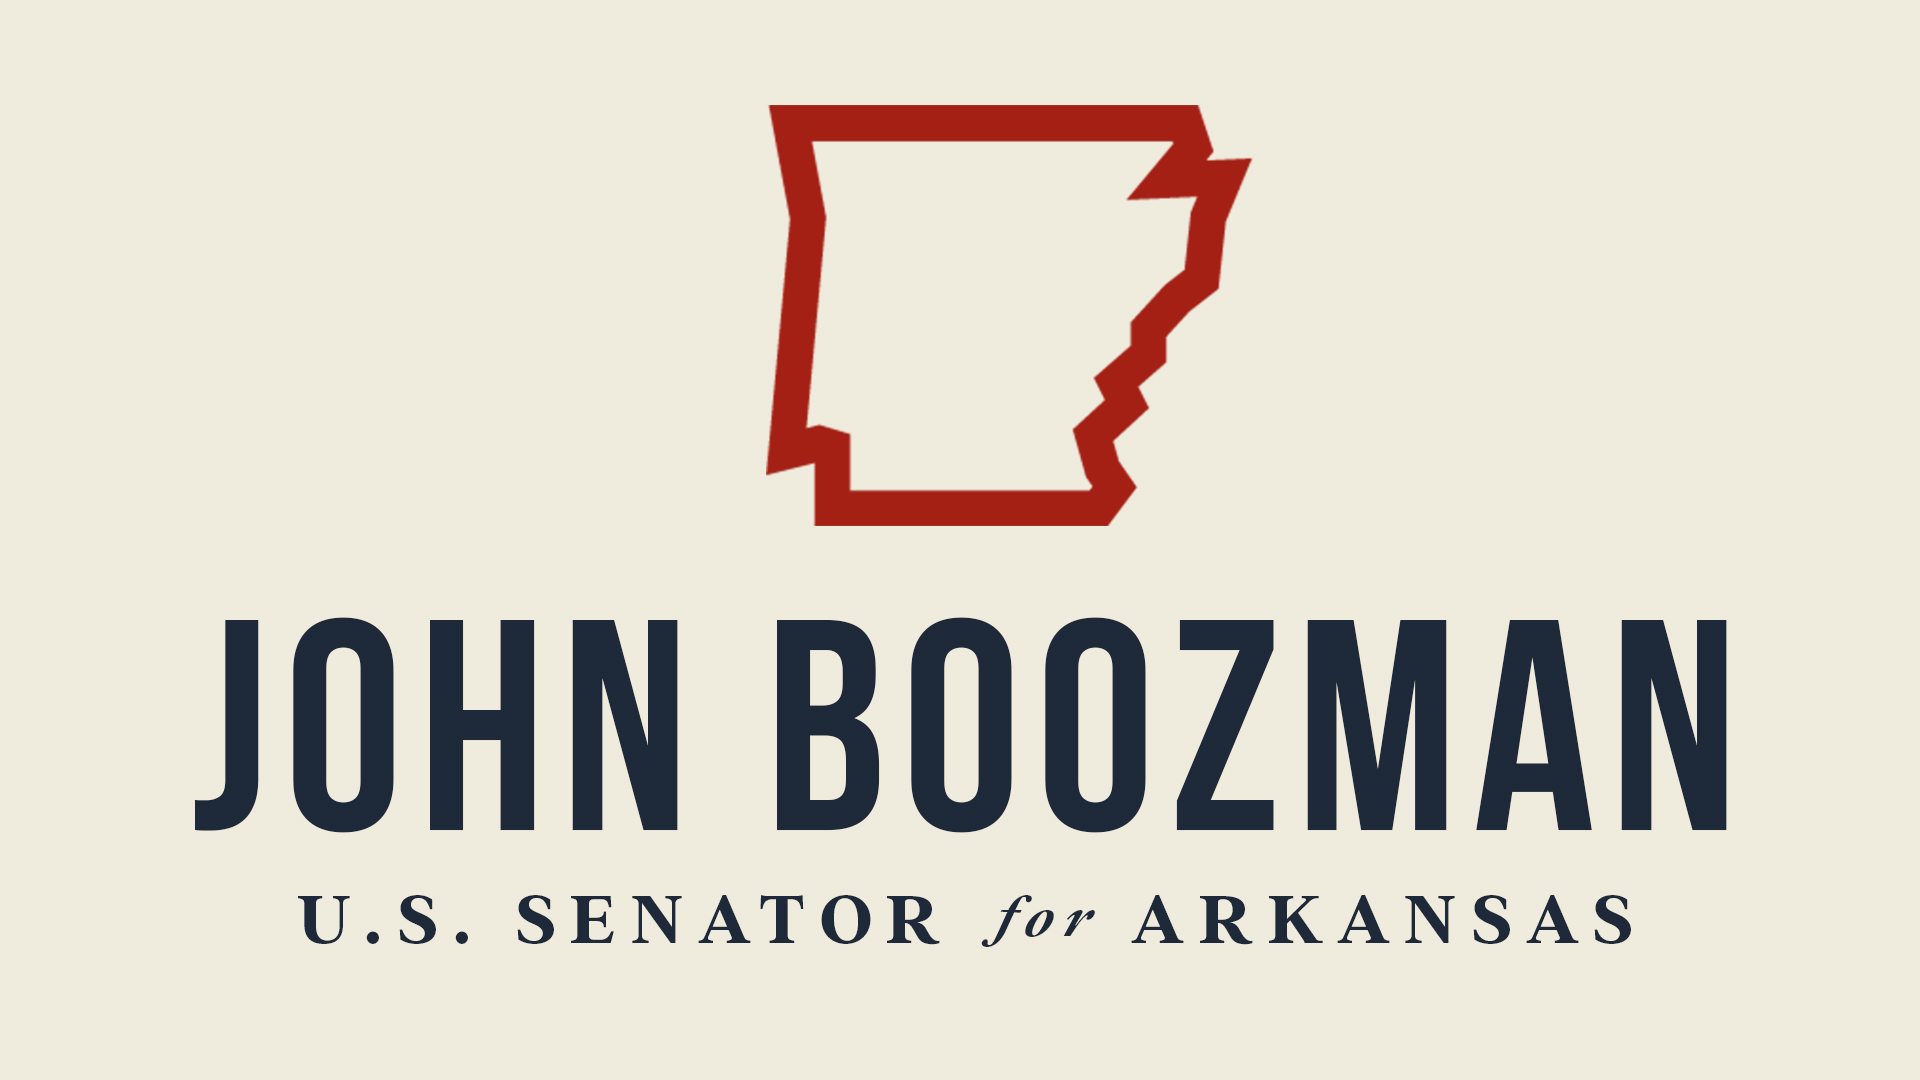 www.boozman.senate.gov